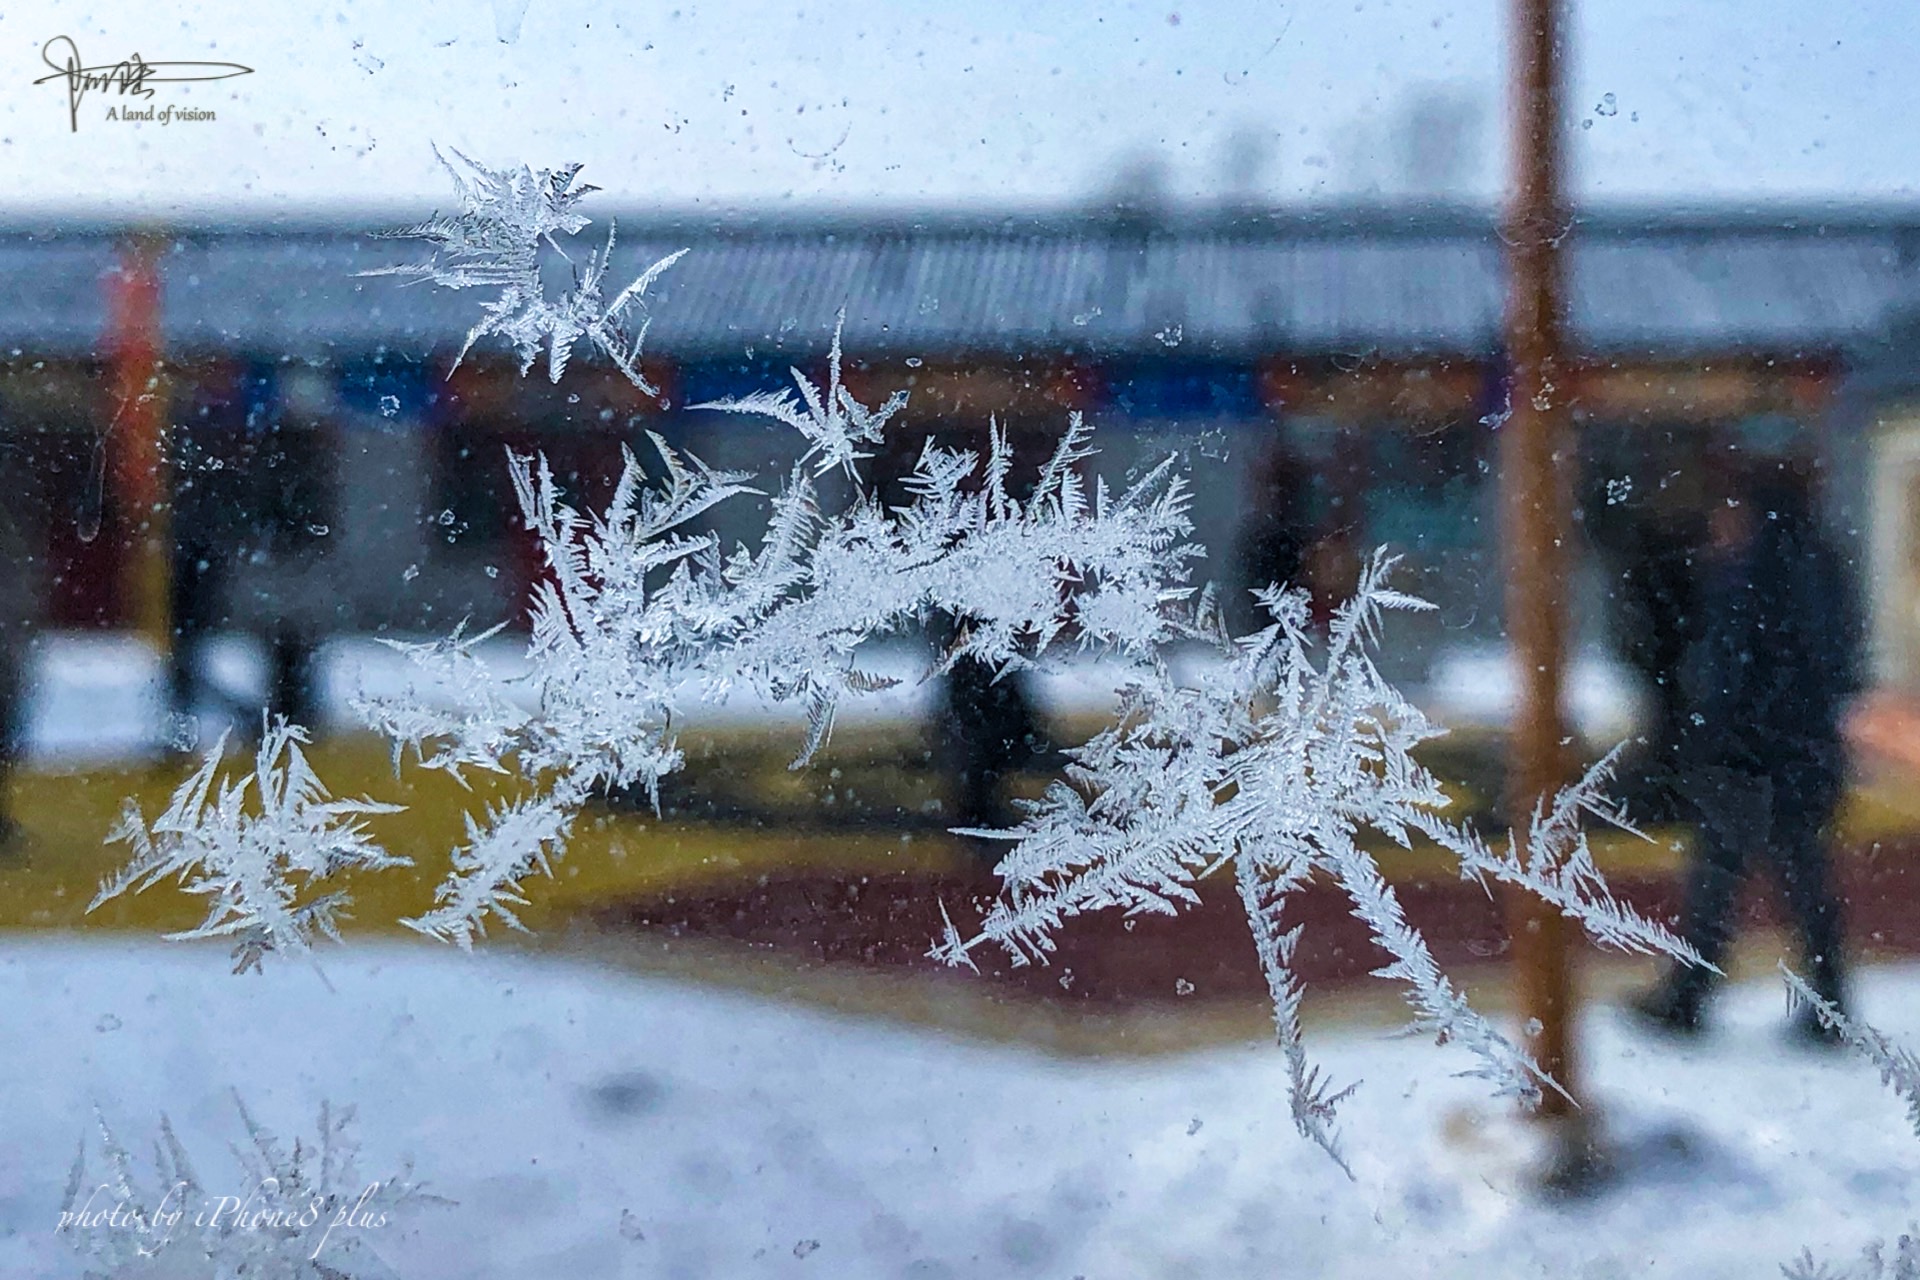 在哈尔滨的冬天,遇见满窗冰花,典型的北方啊